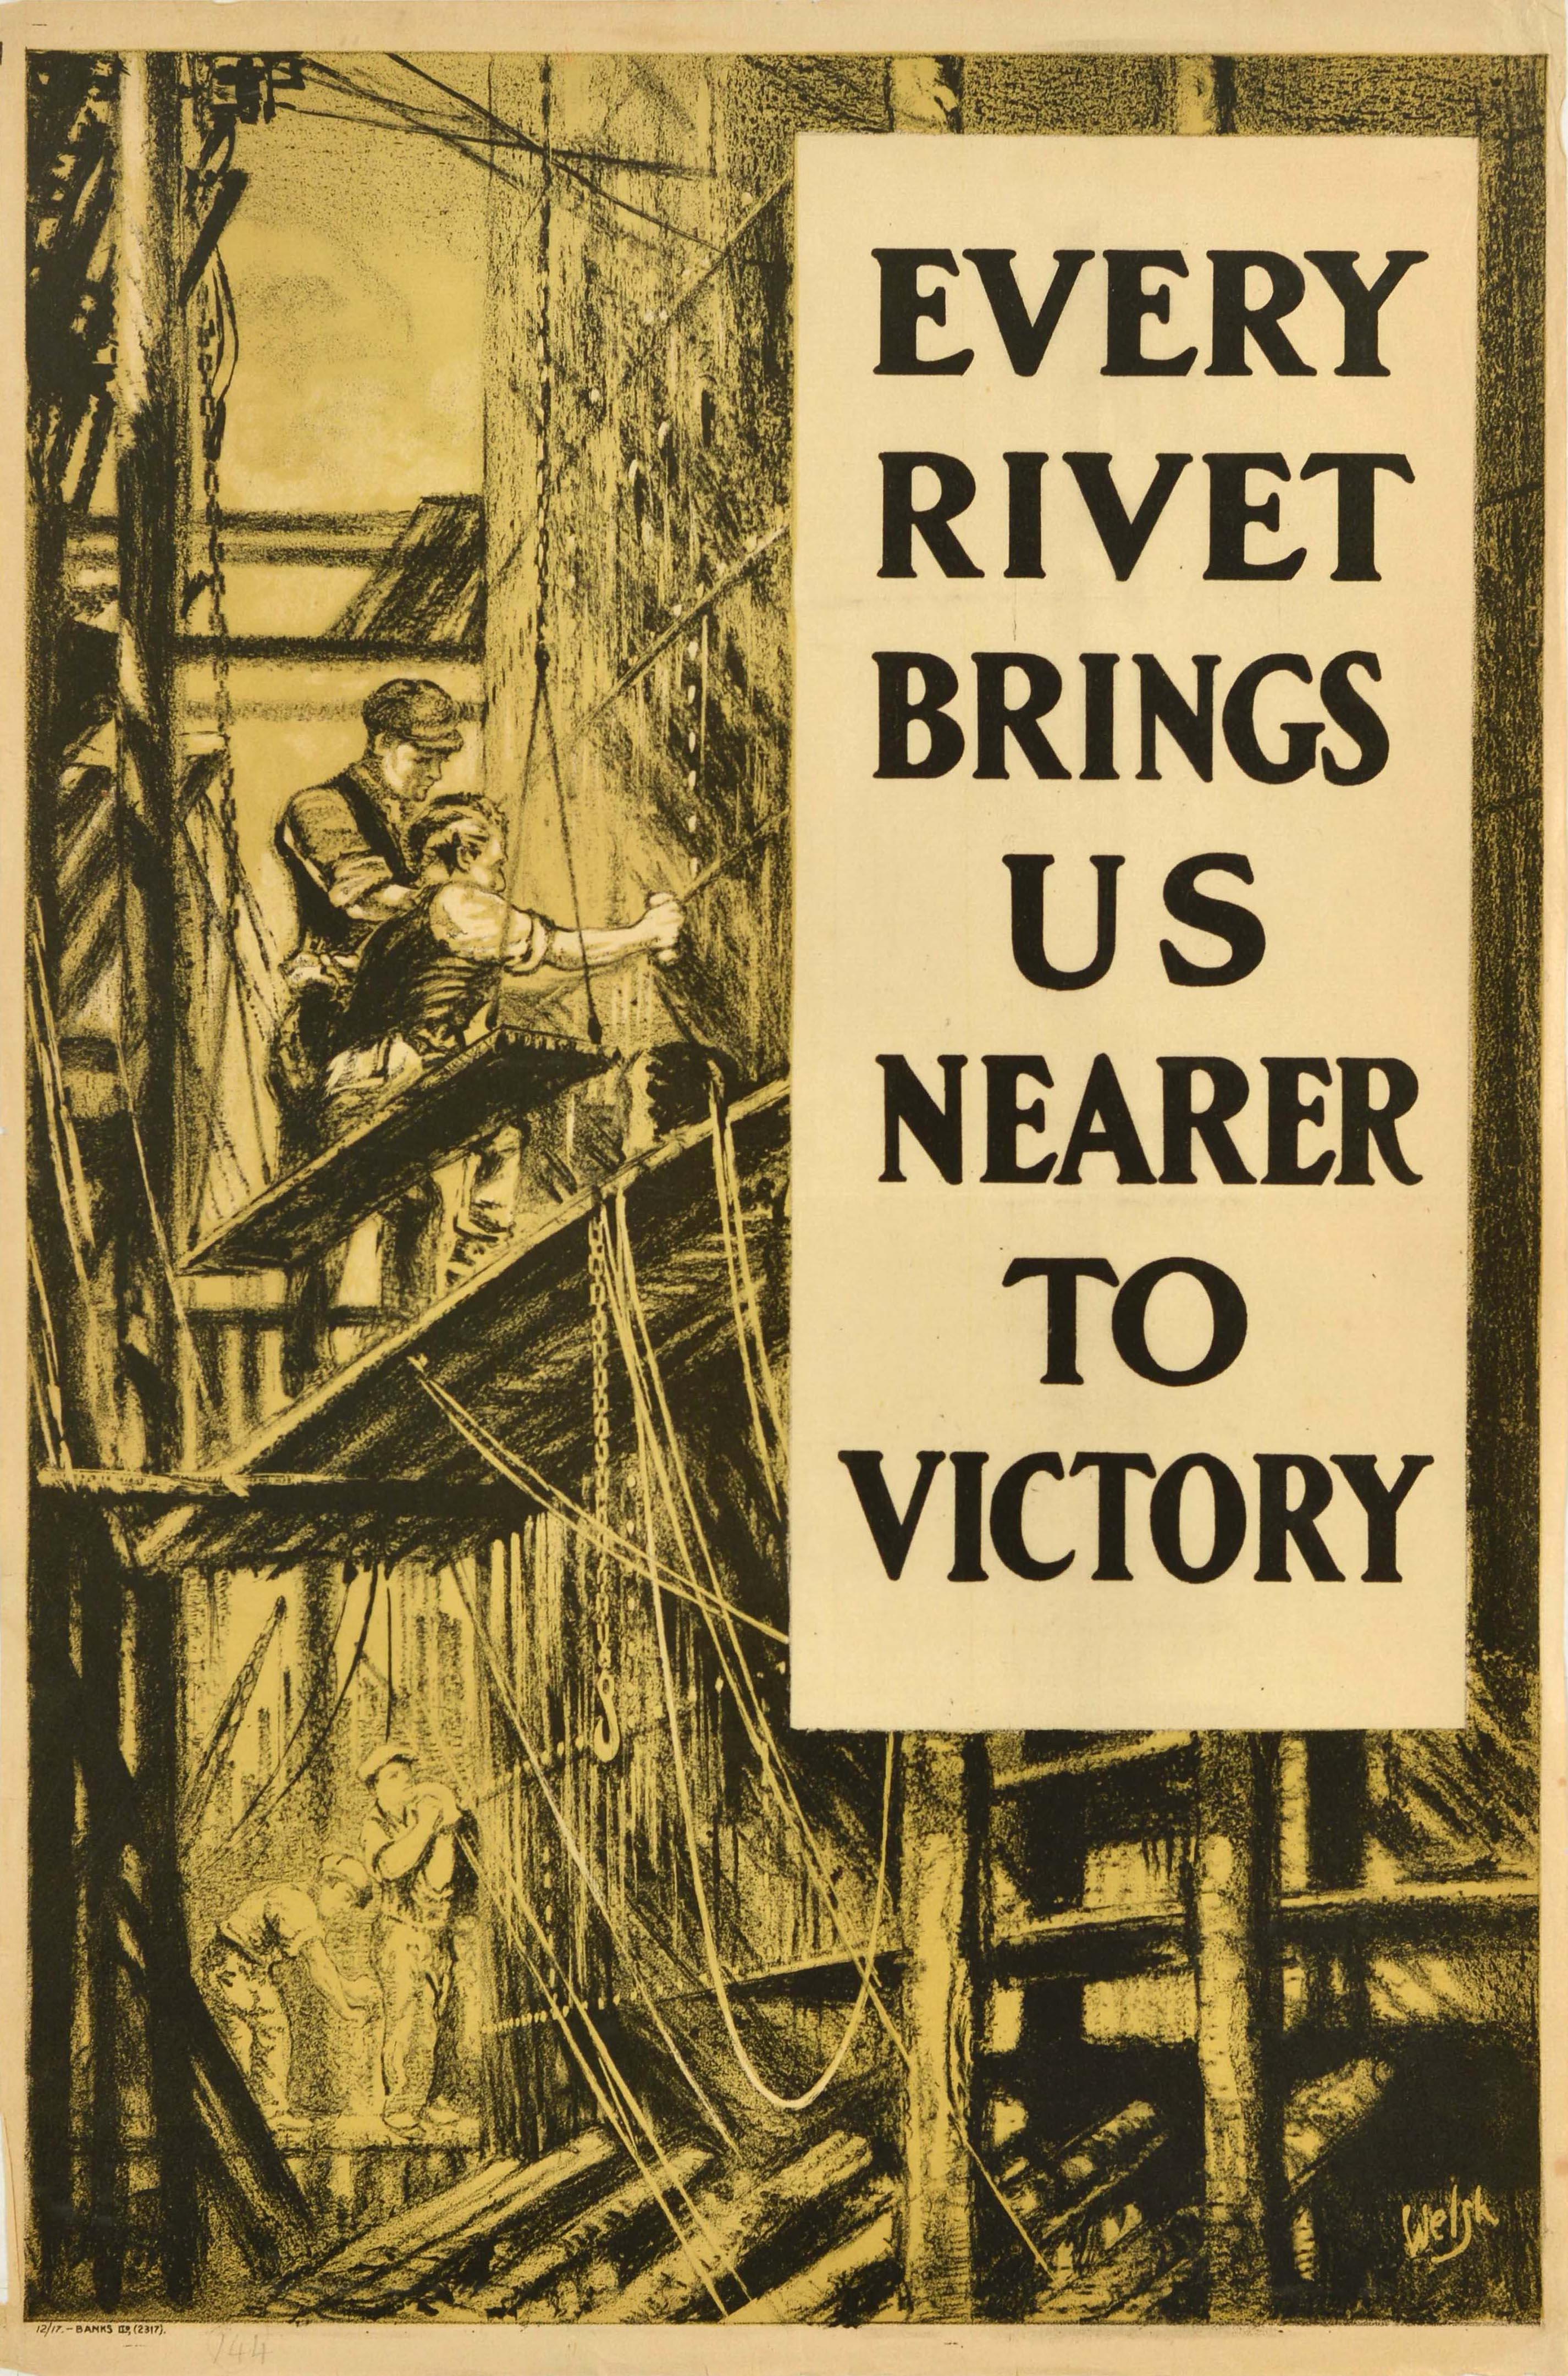 Unknown Print – Original Antikes Original-Poster aus dem Ersten Weltkrieg, „Home Front Poster“, Jedes Rivet bringt uns näher zum Sieg